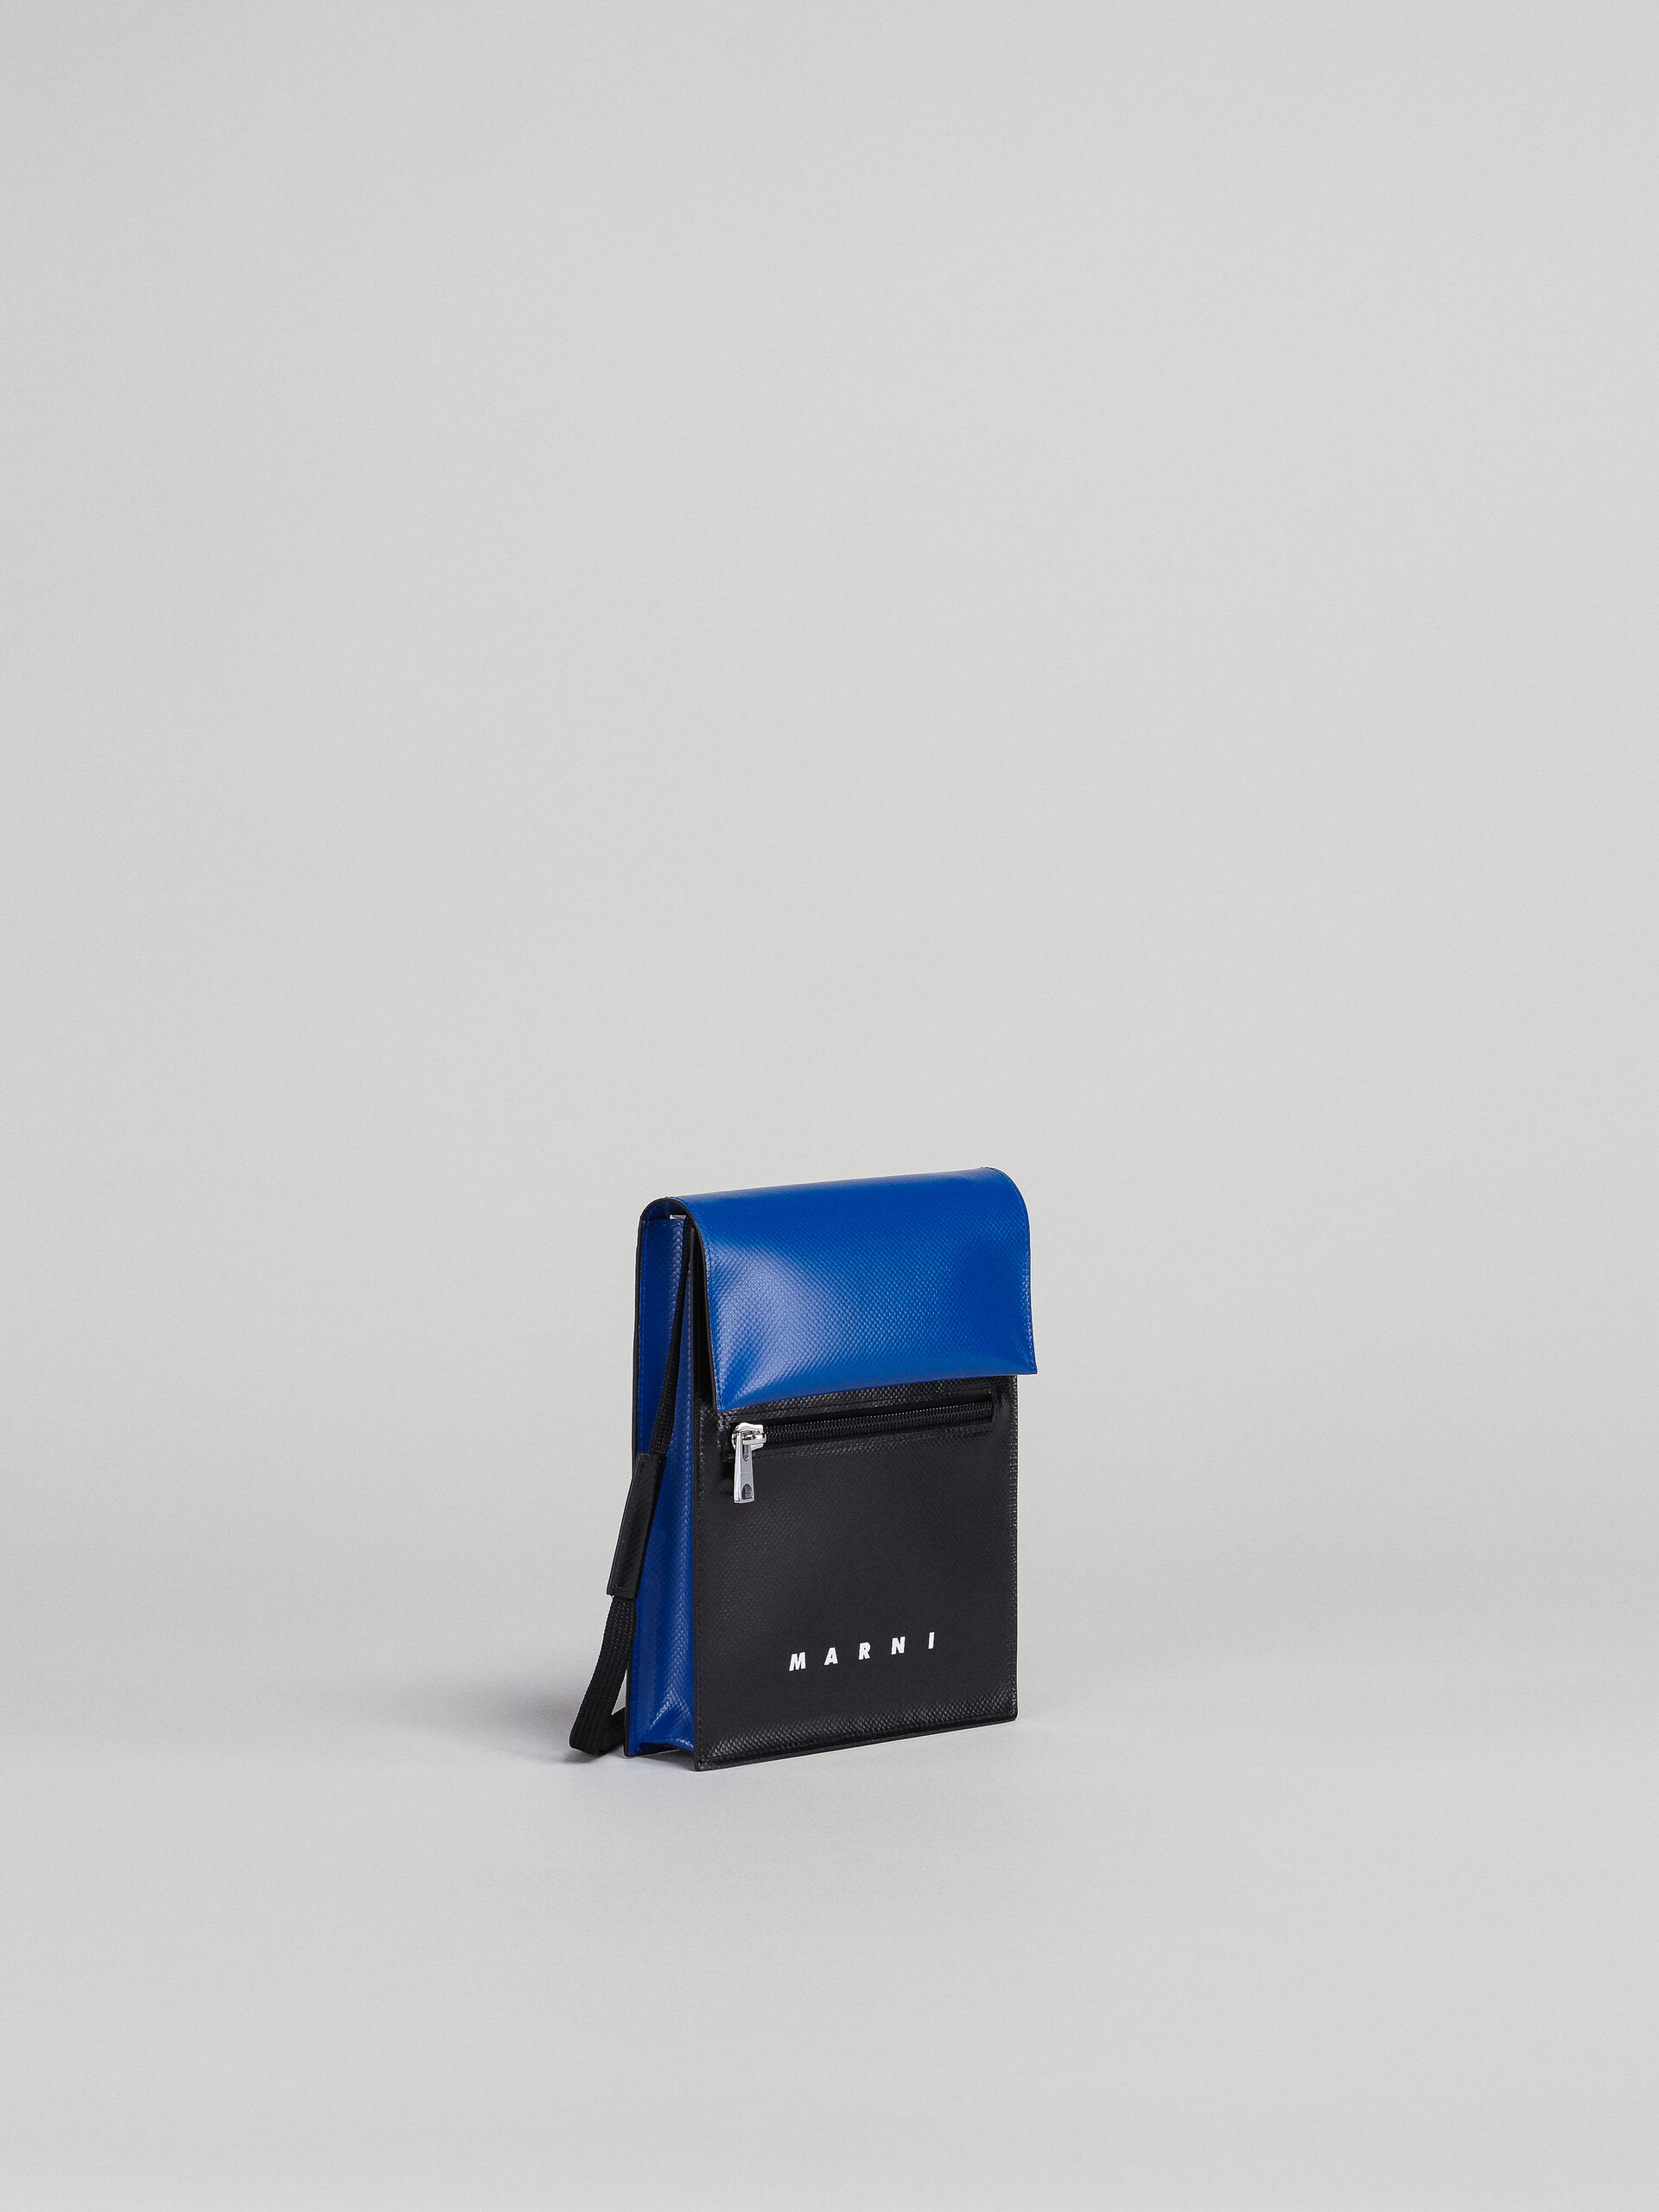 Tribeca shoulder bag in blue and black - Shoulder Bag - Image 6